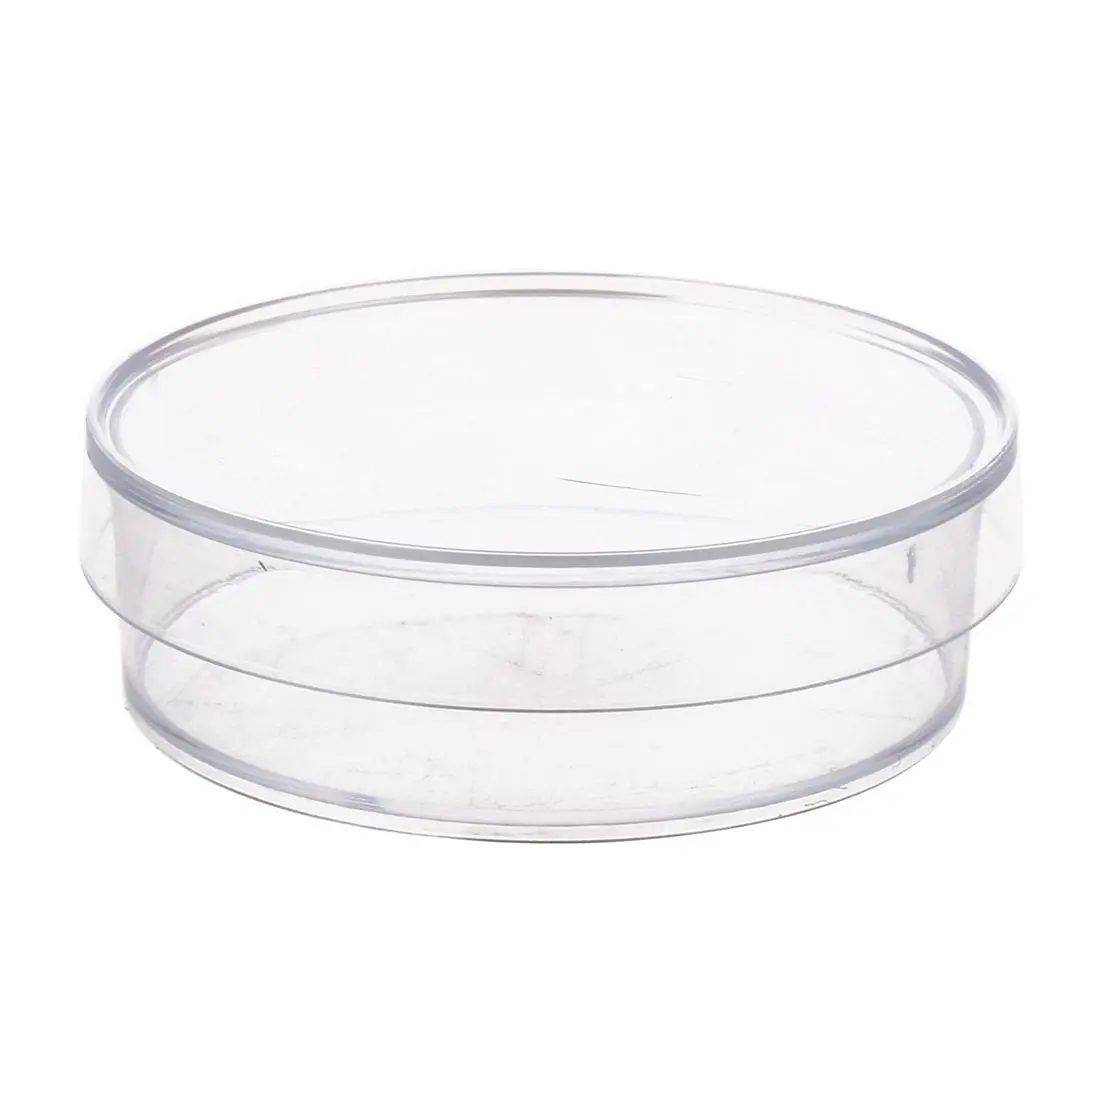 10 шт. 35 мм х 10 мм стерильные пластиковые чашки Петри с крышкой для LB плиты дрожжей (прозрачный цвет)